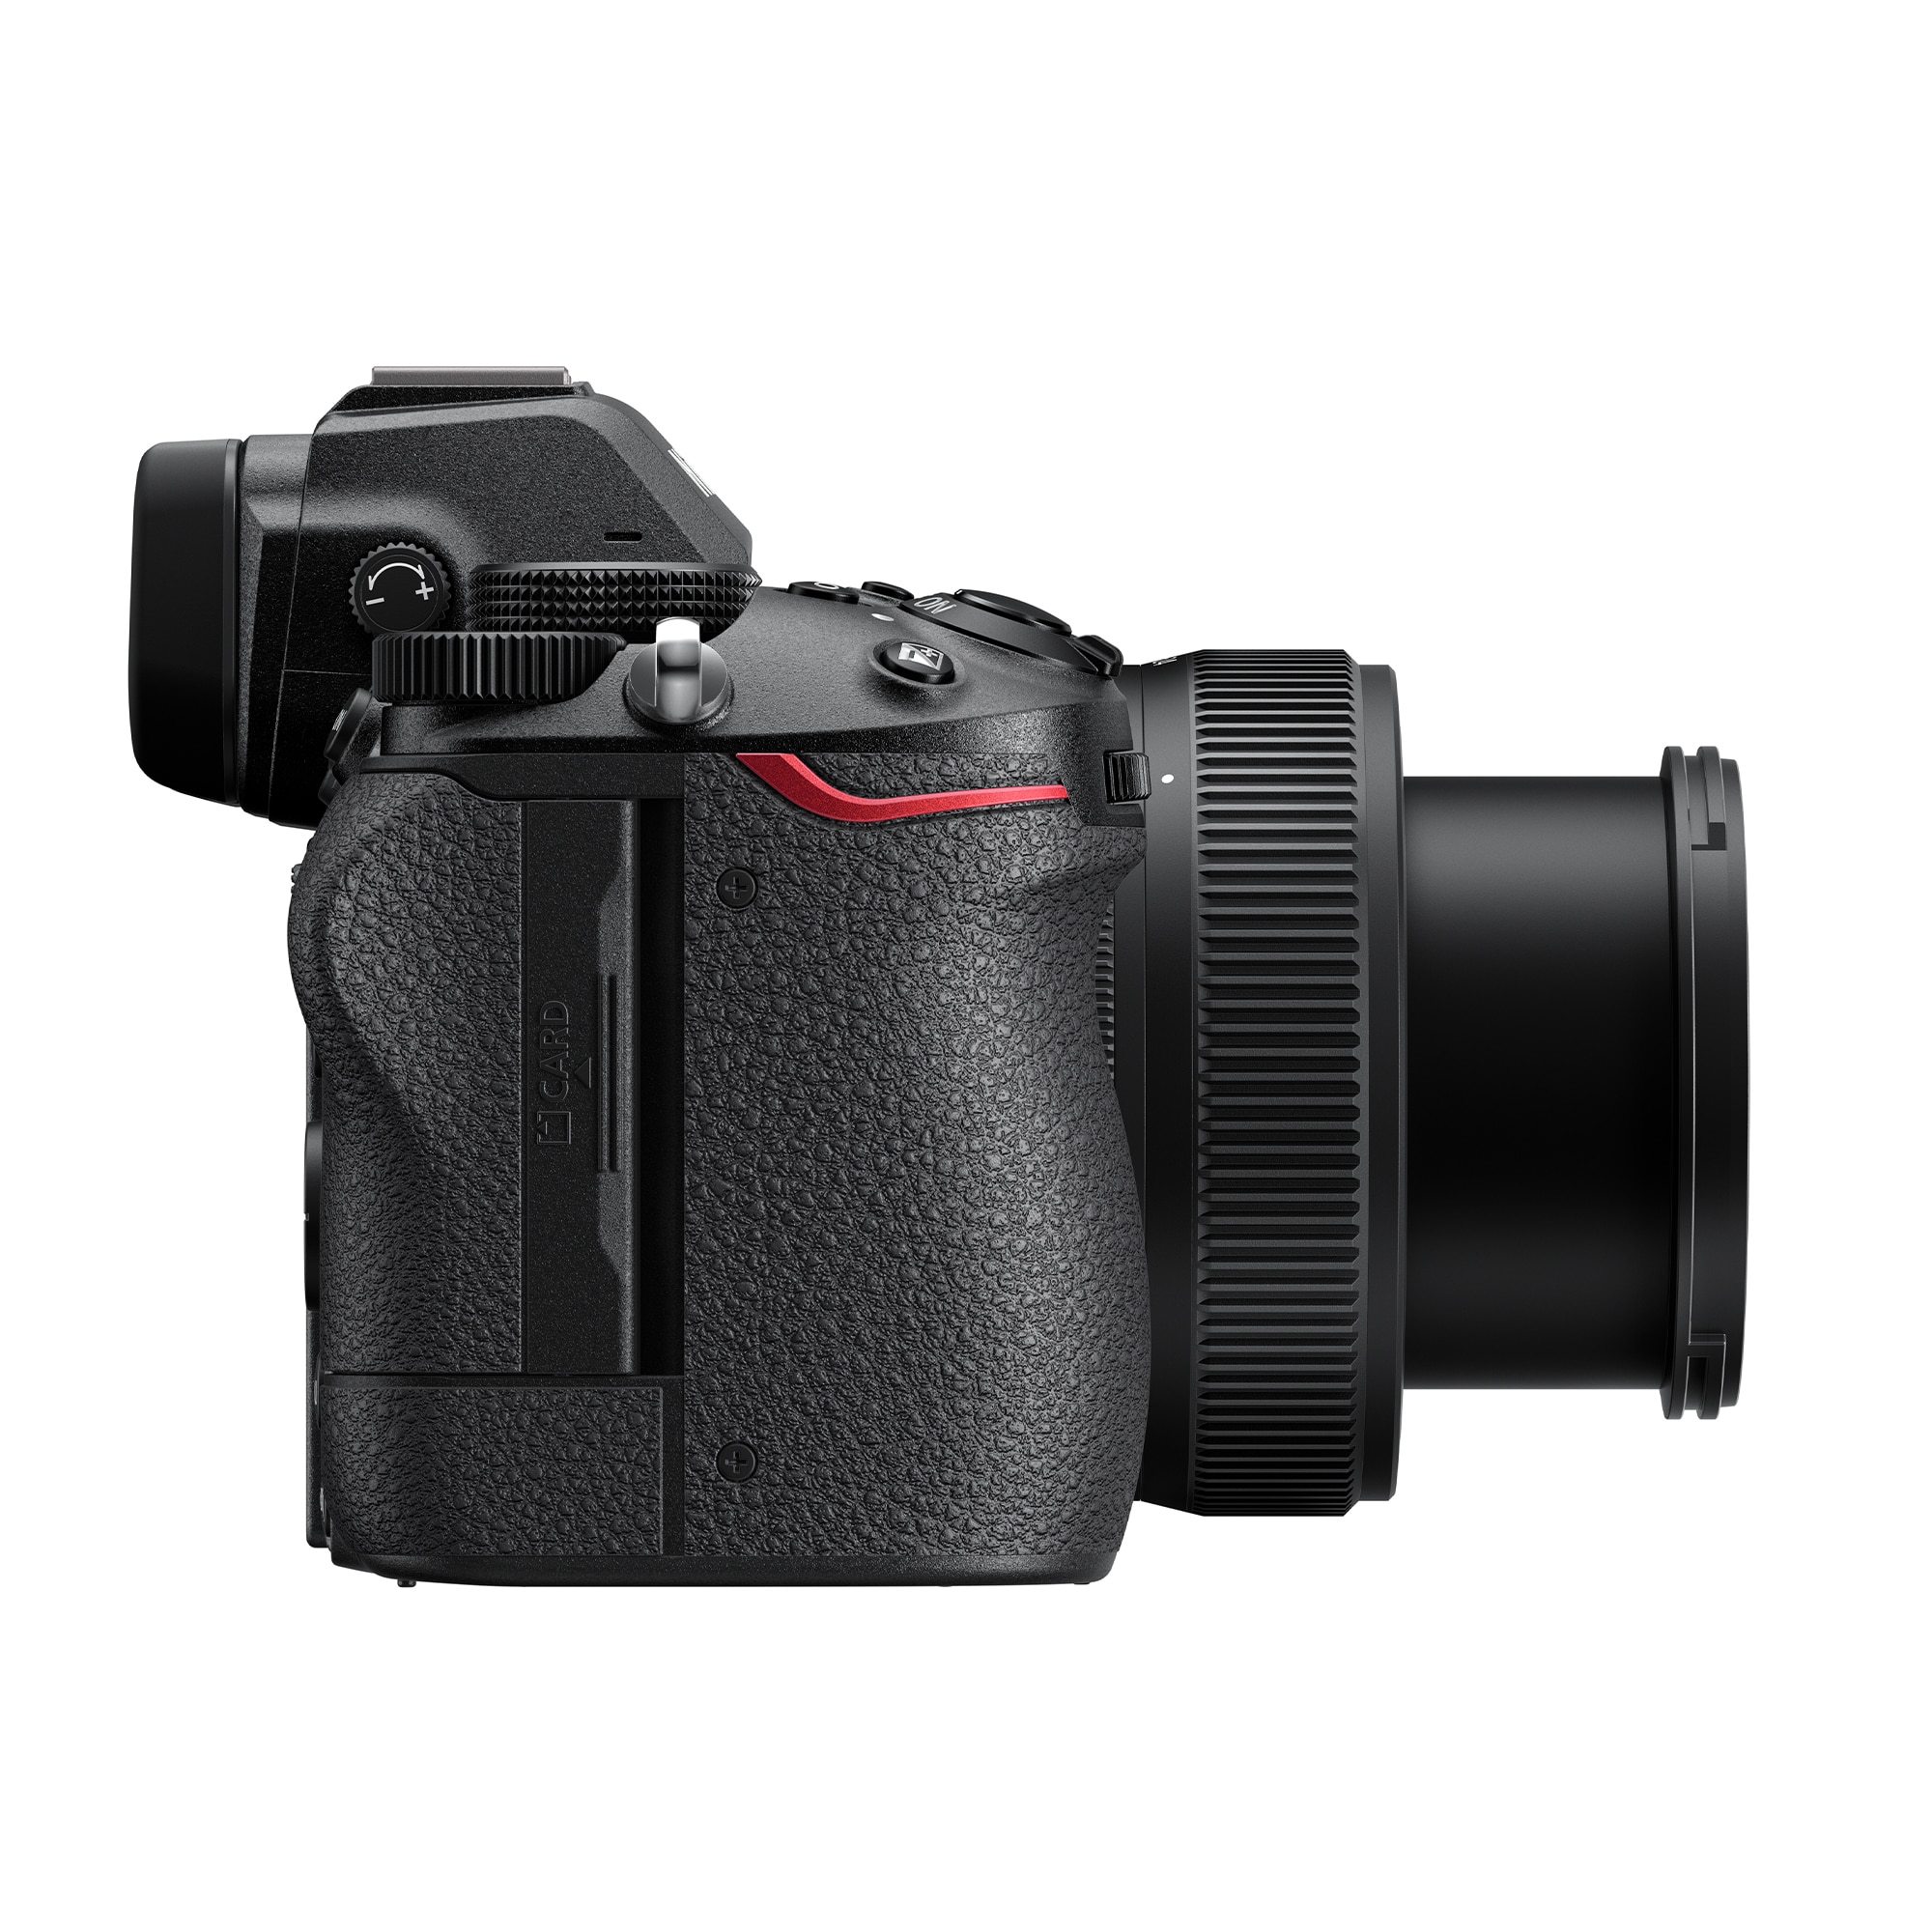 Nikon Z5 + NIKKOR Z 24-50mm f/4-6.3